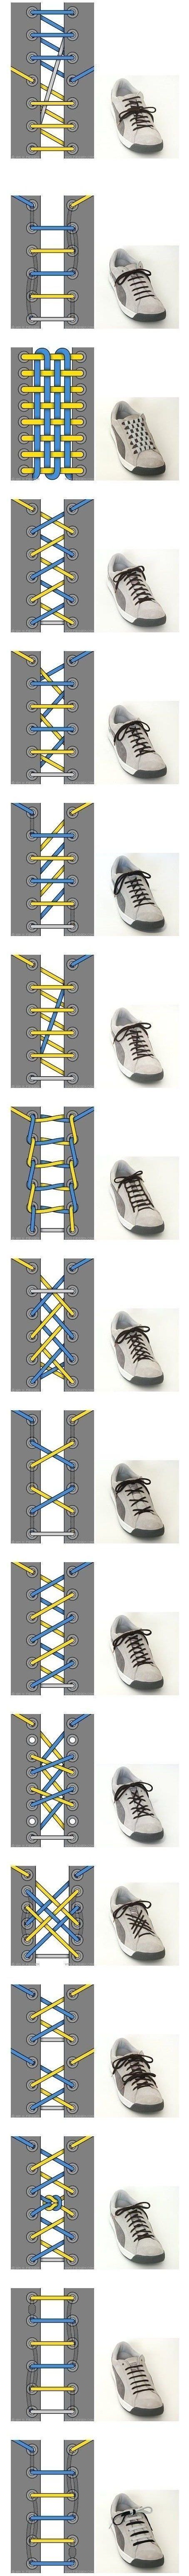 shoelace...